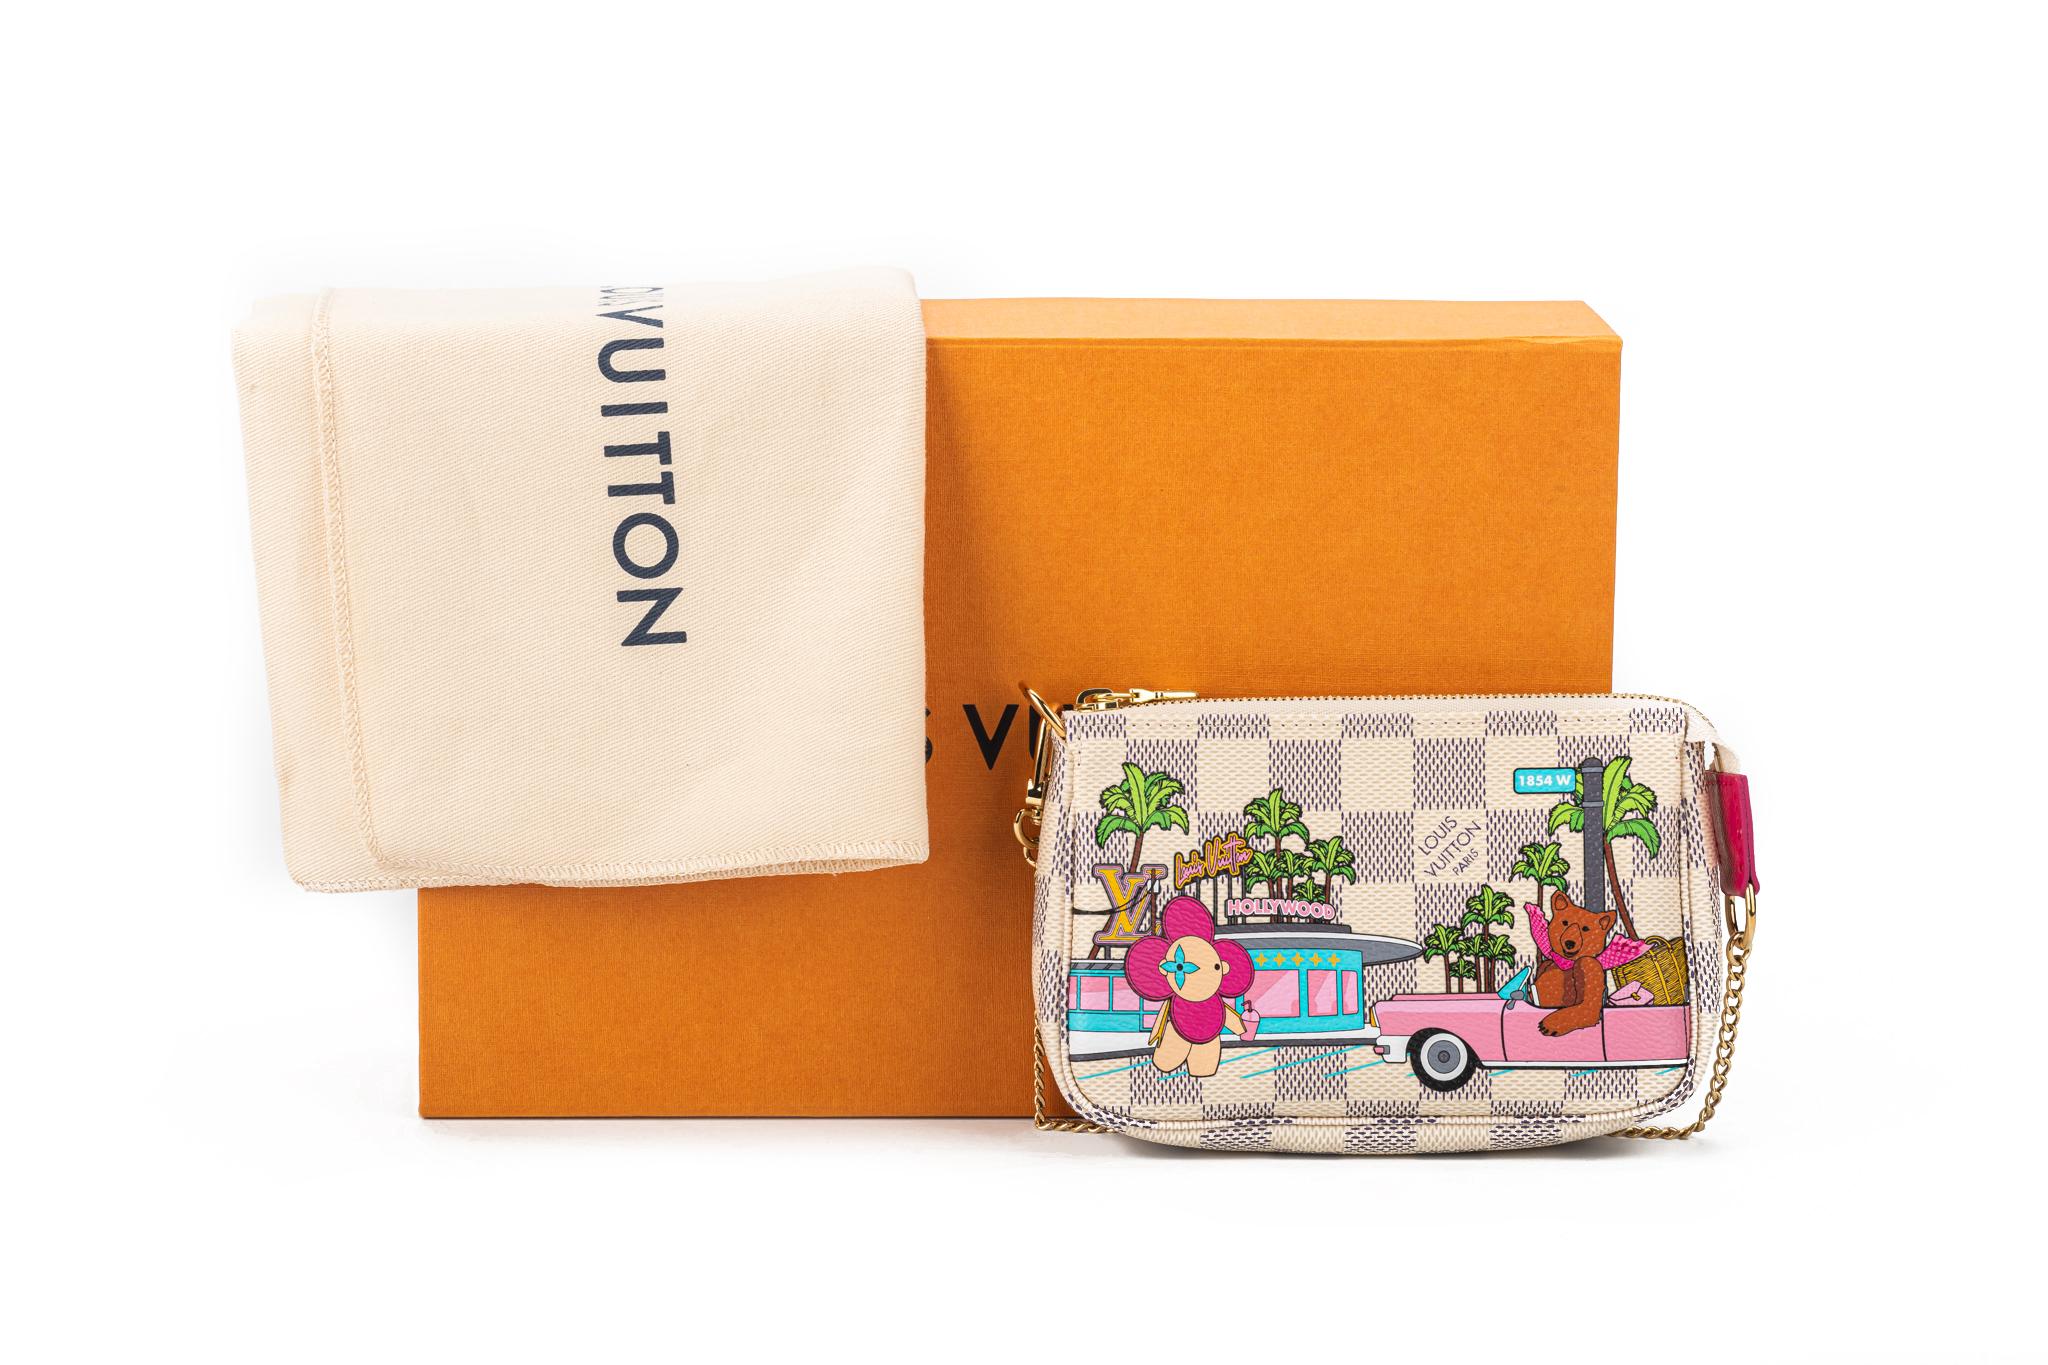 Louis Vuitton Mini 2020 Vivienne Tokyo Pochette Accessoires